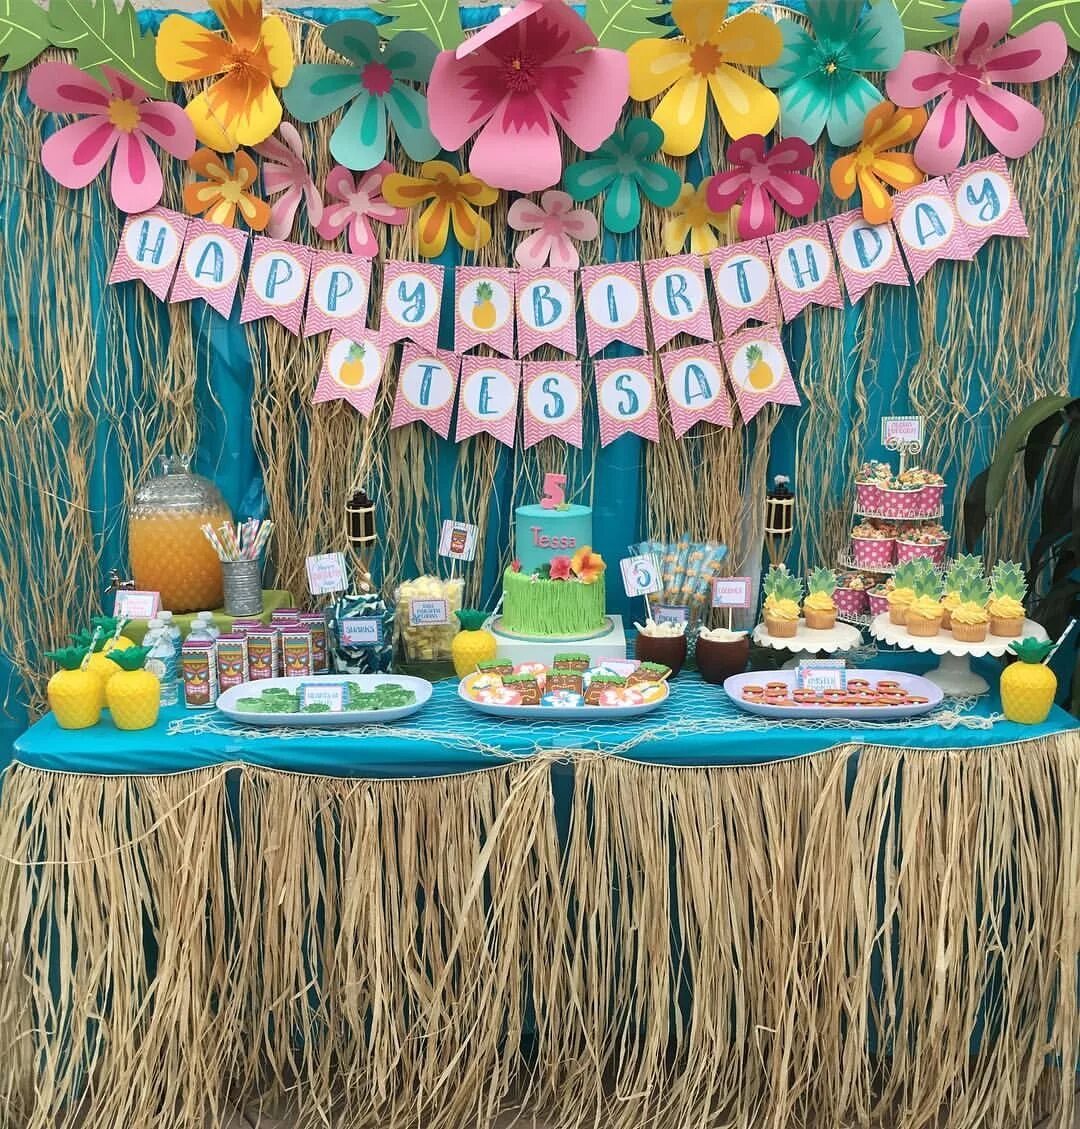 Луау. Вечеринка в стиле АЛОХА Гавайи. День рождения в стиле АЛОХА Гавайи. Фотозона Гавайская вечеринка АЛОХА. Гавайи вечеринка в стиле Гавайи.